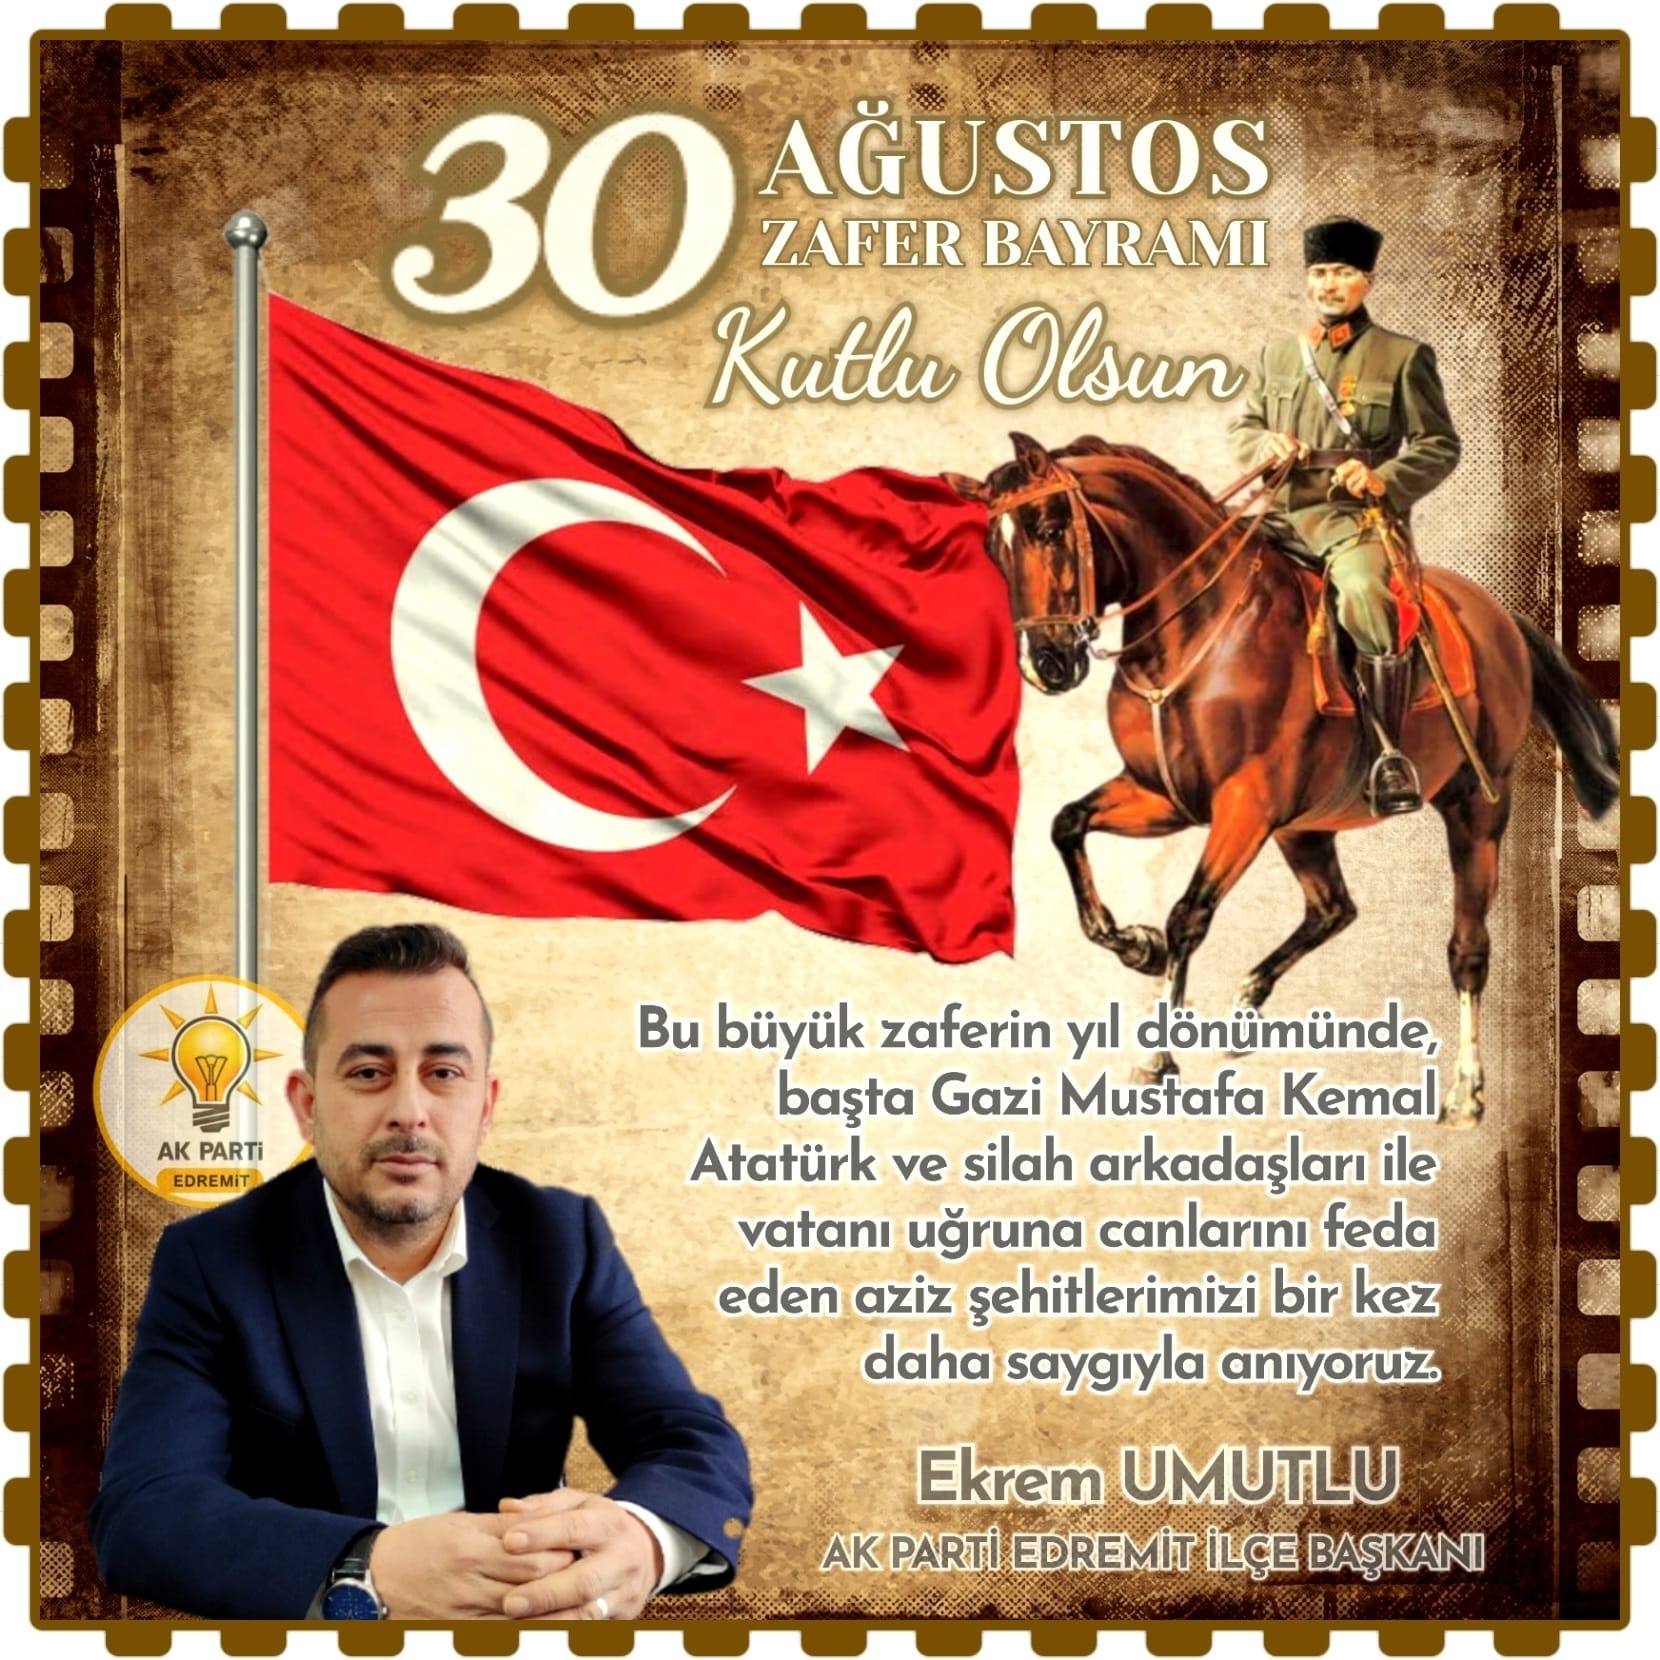 AK Parti Edremit İlçe Başkanı Ekrem Umutlu’nun 30 AĞustos Zafer Bayramı Kutlaması